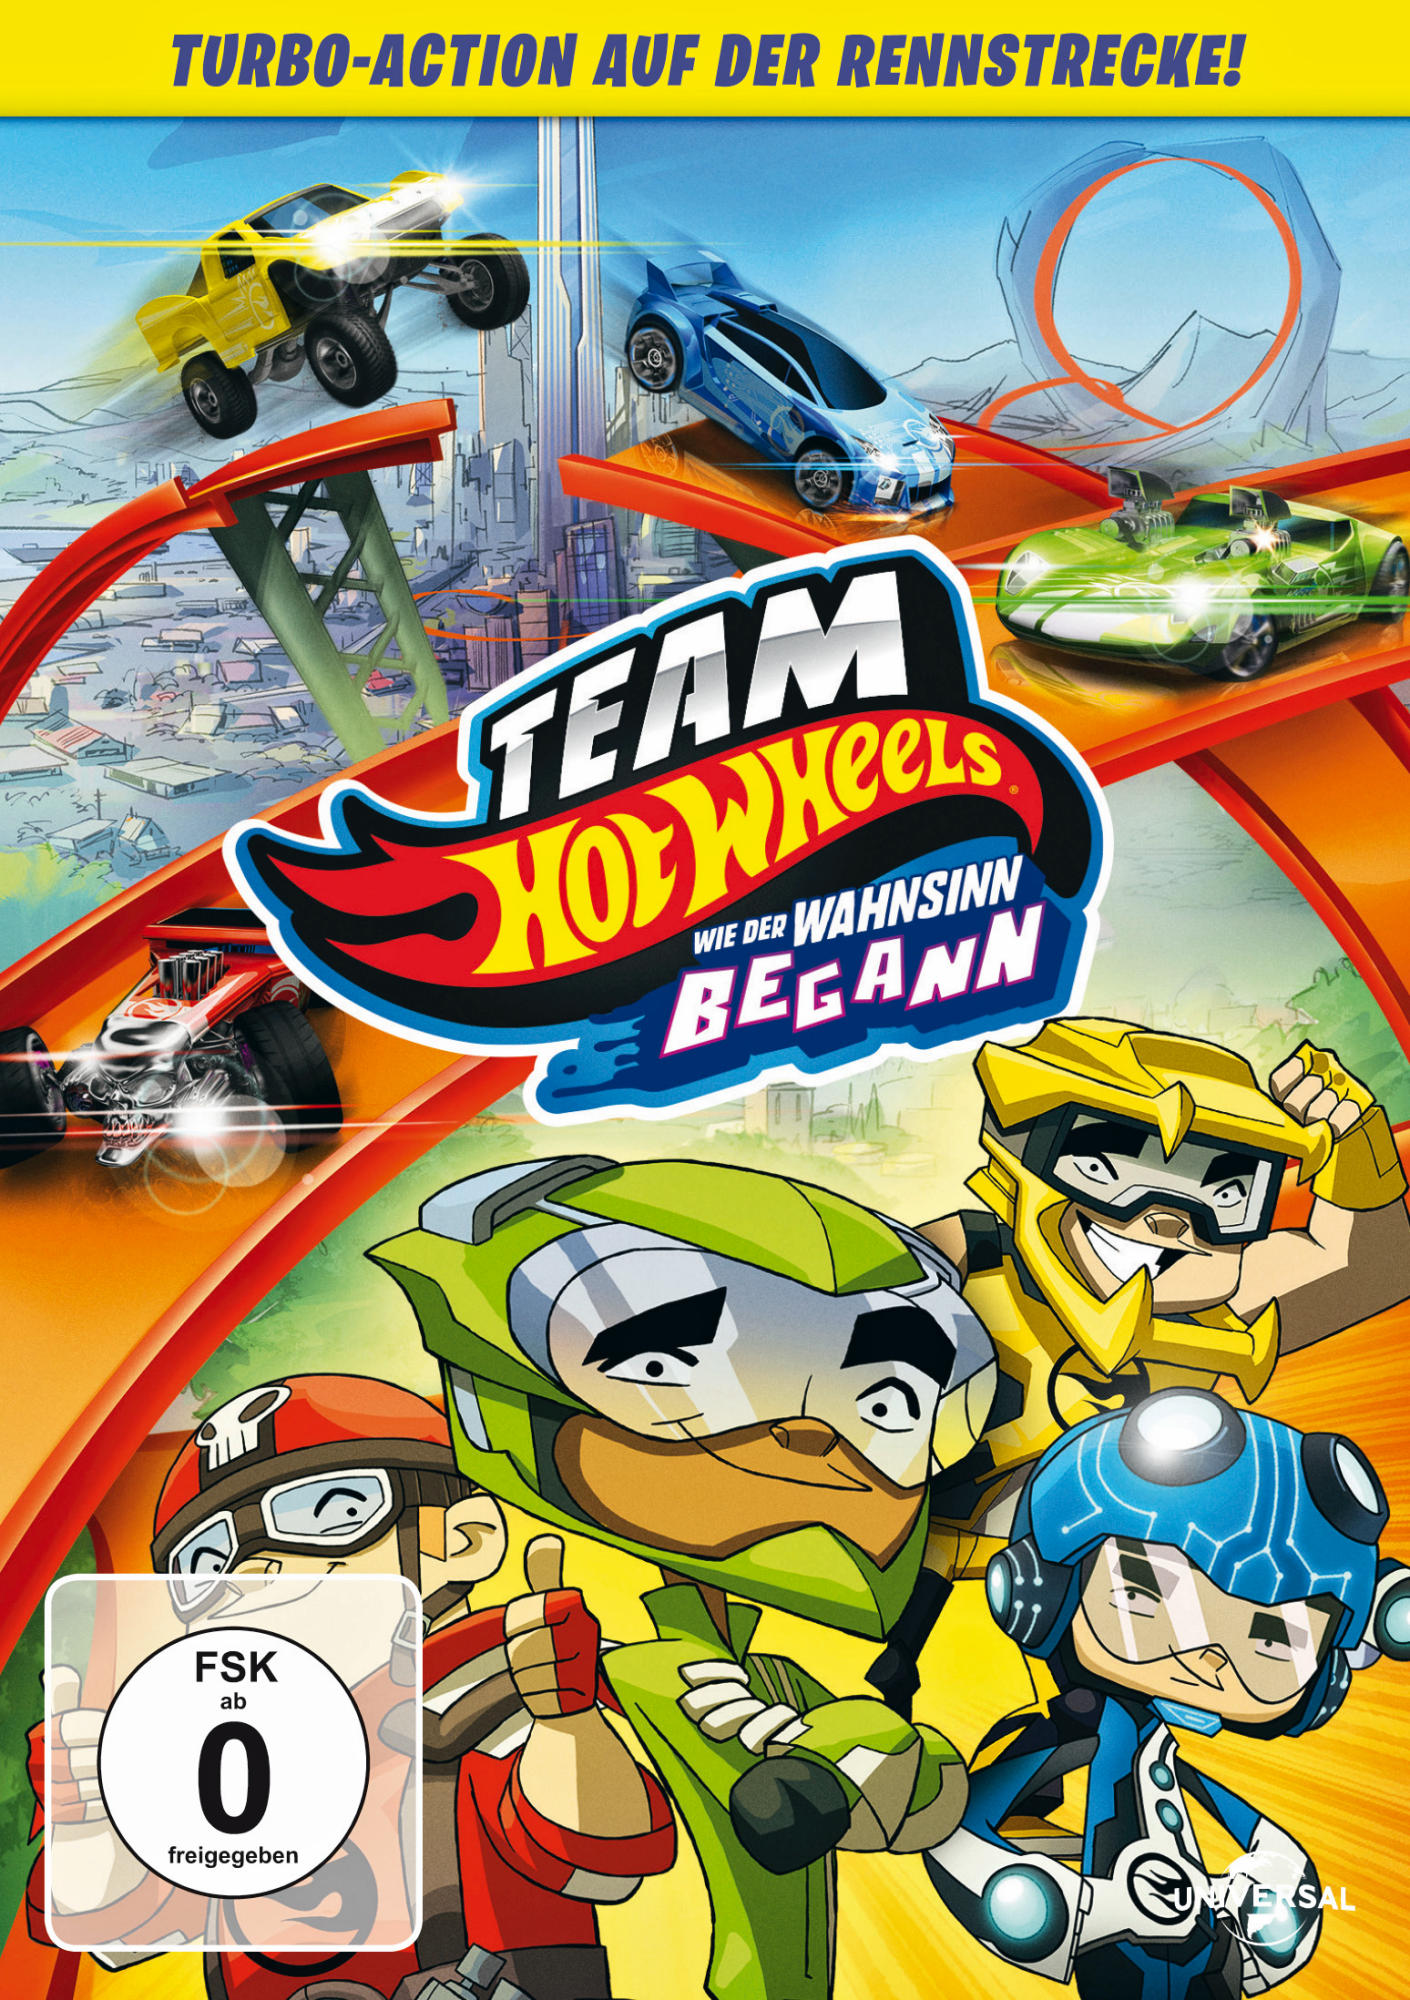 Team Hot Wahnsinn - Wheels DVD Wie der begann